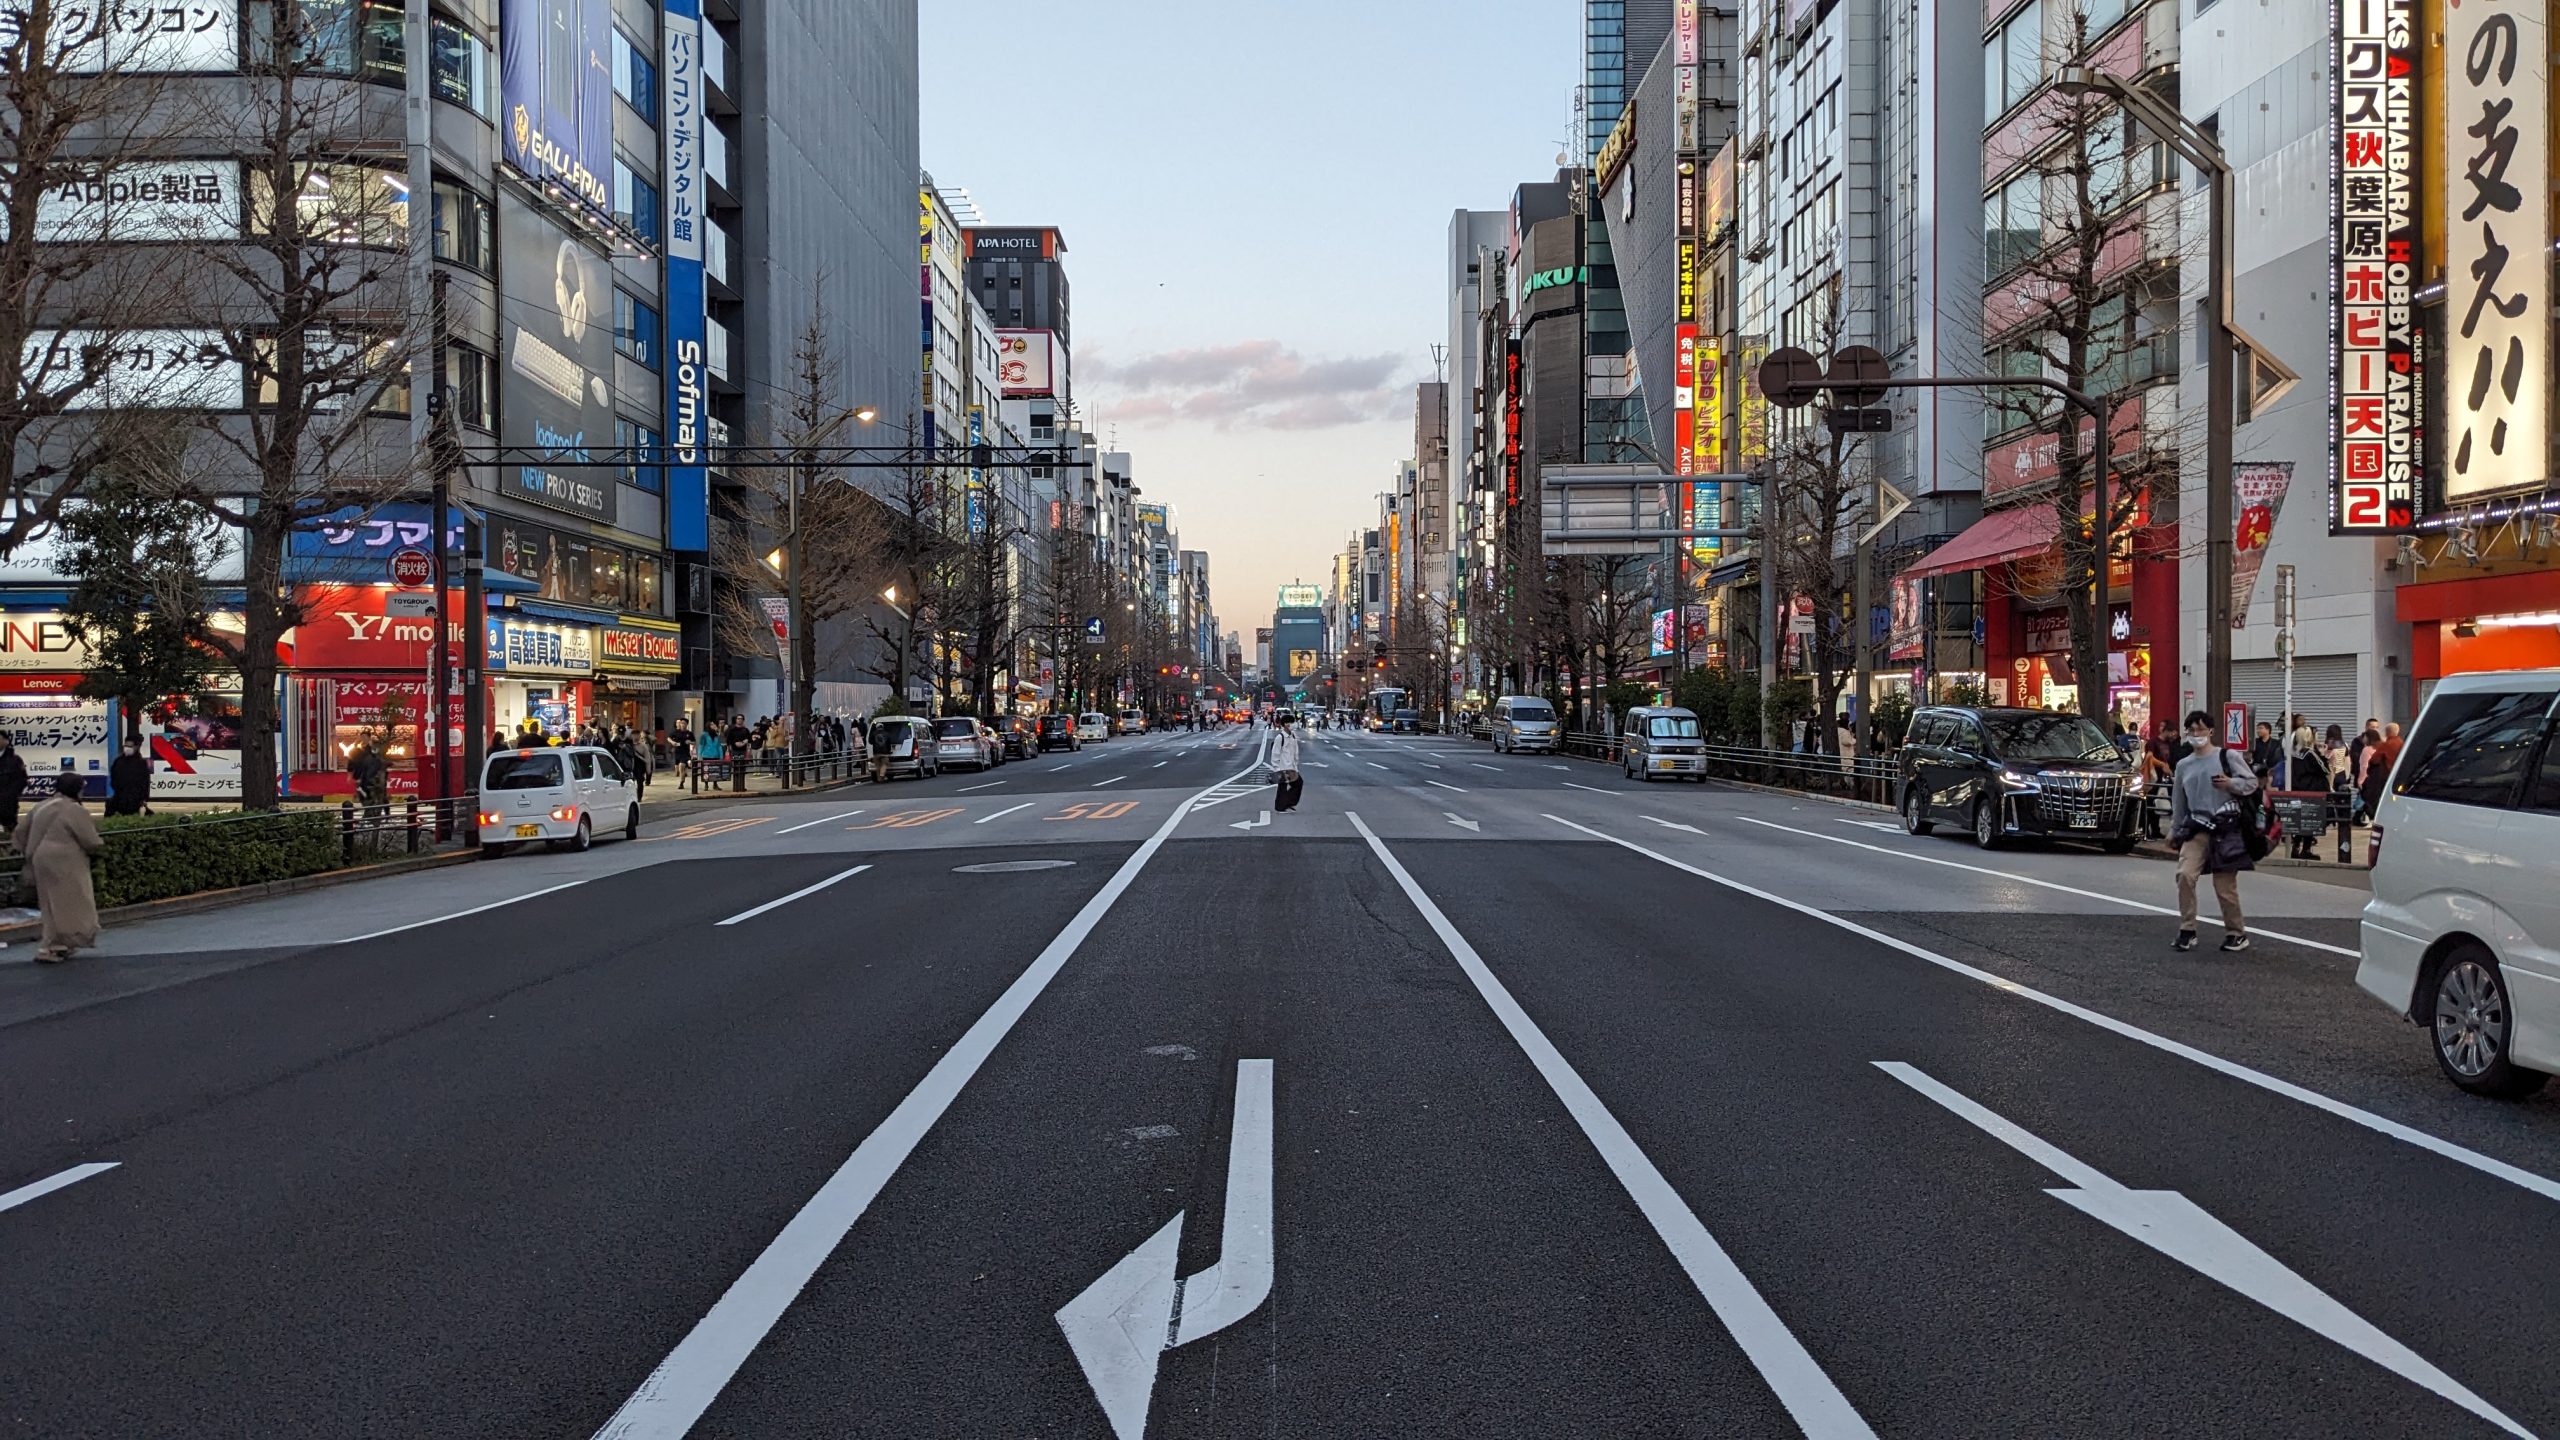 Strada ampia e poco affollata nel quartiere di Akihabara a Tokyo, con segnali stradali bianchi sul manto grigio, fiancheggiata da edifici con insegne luminose e alberi spogli, e un tramonto che colora il cielo in lontananza